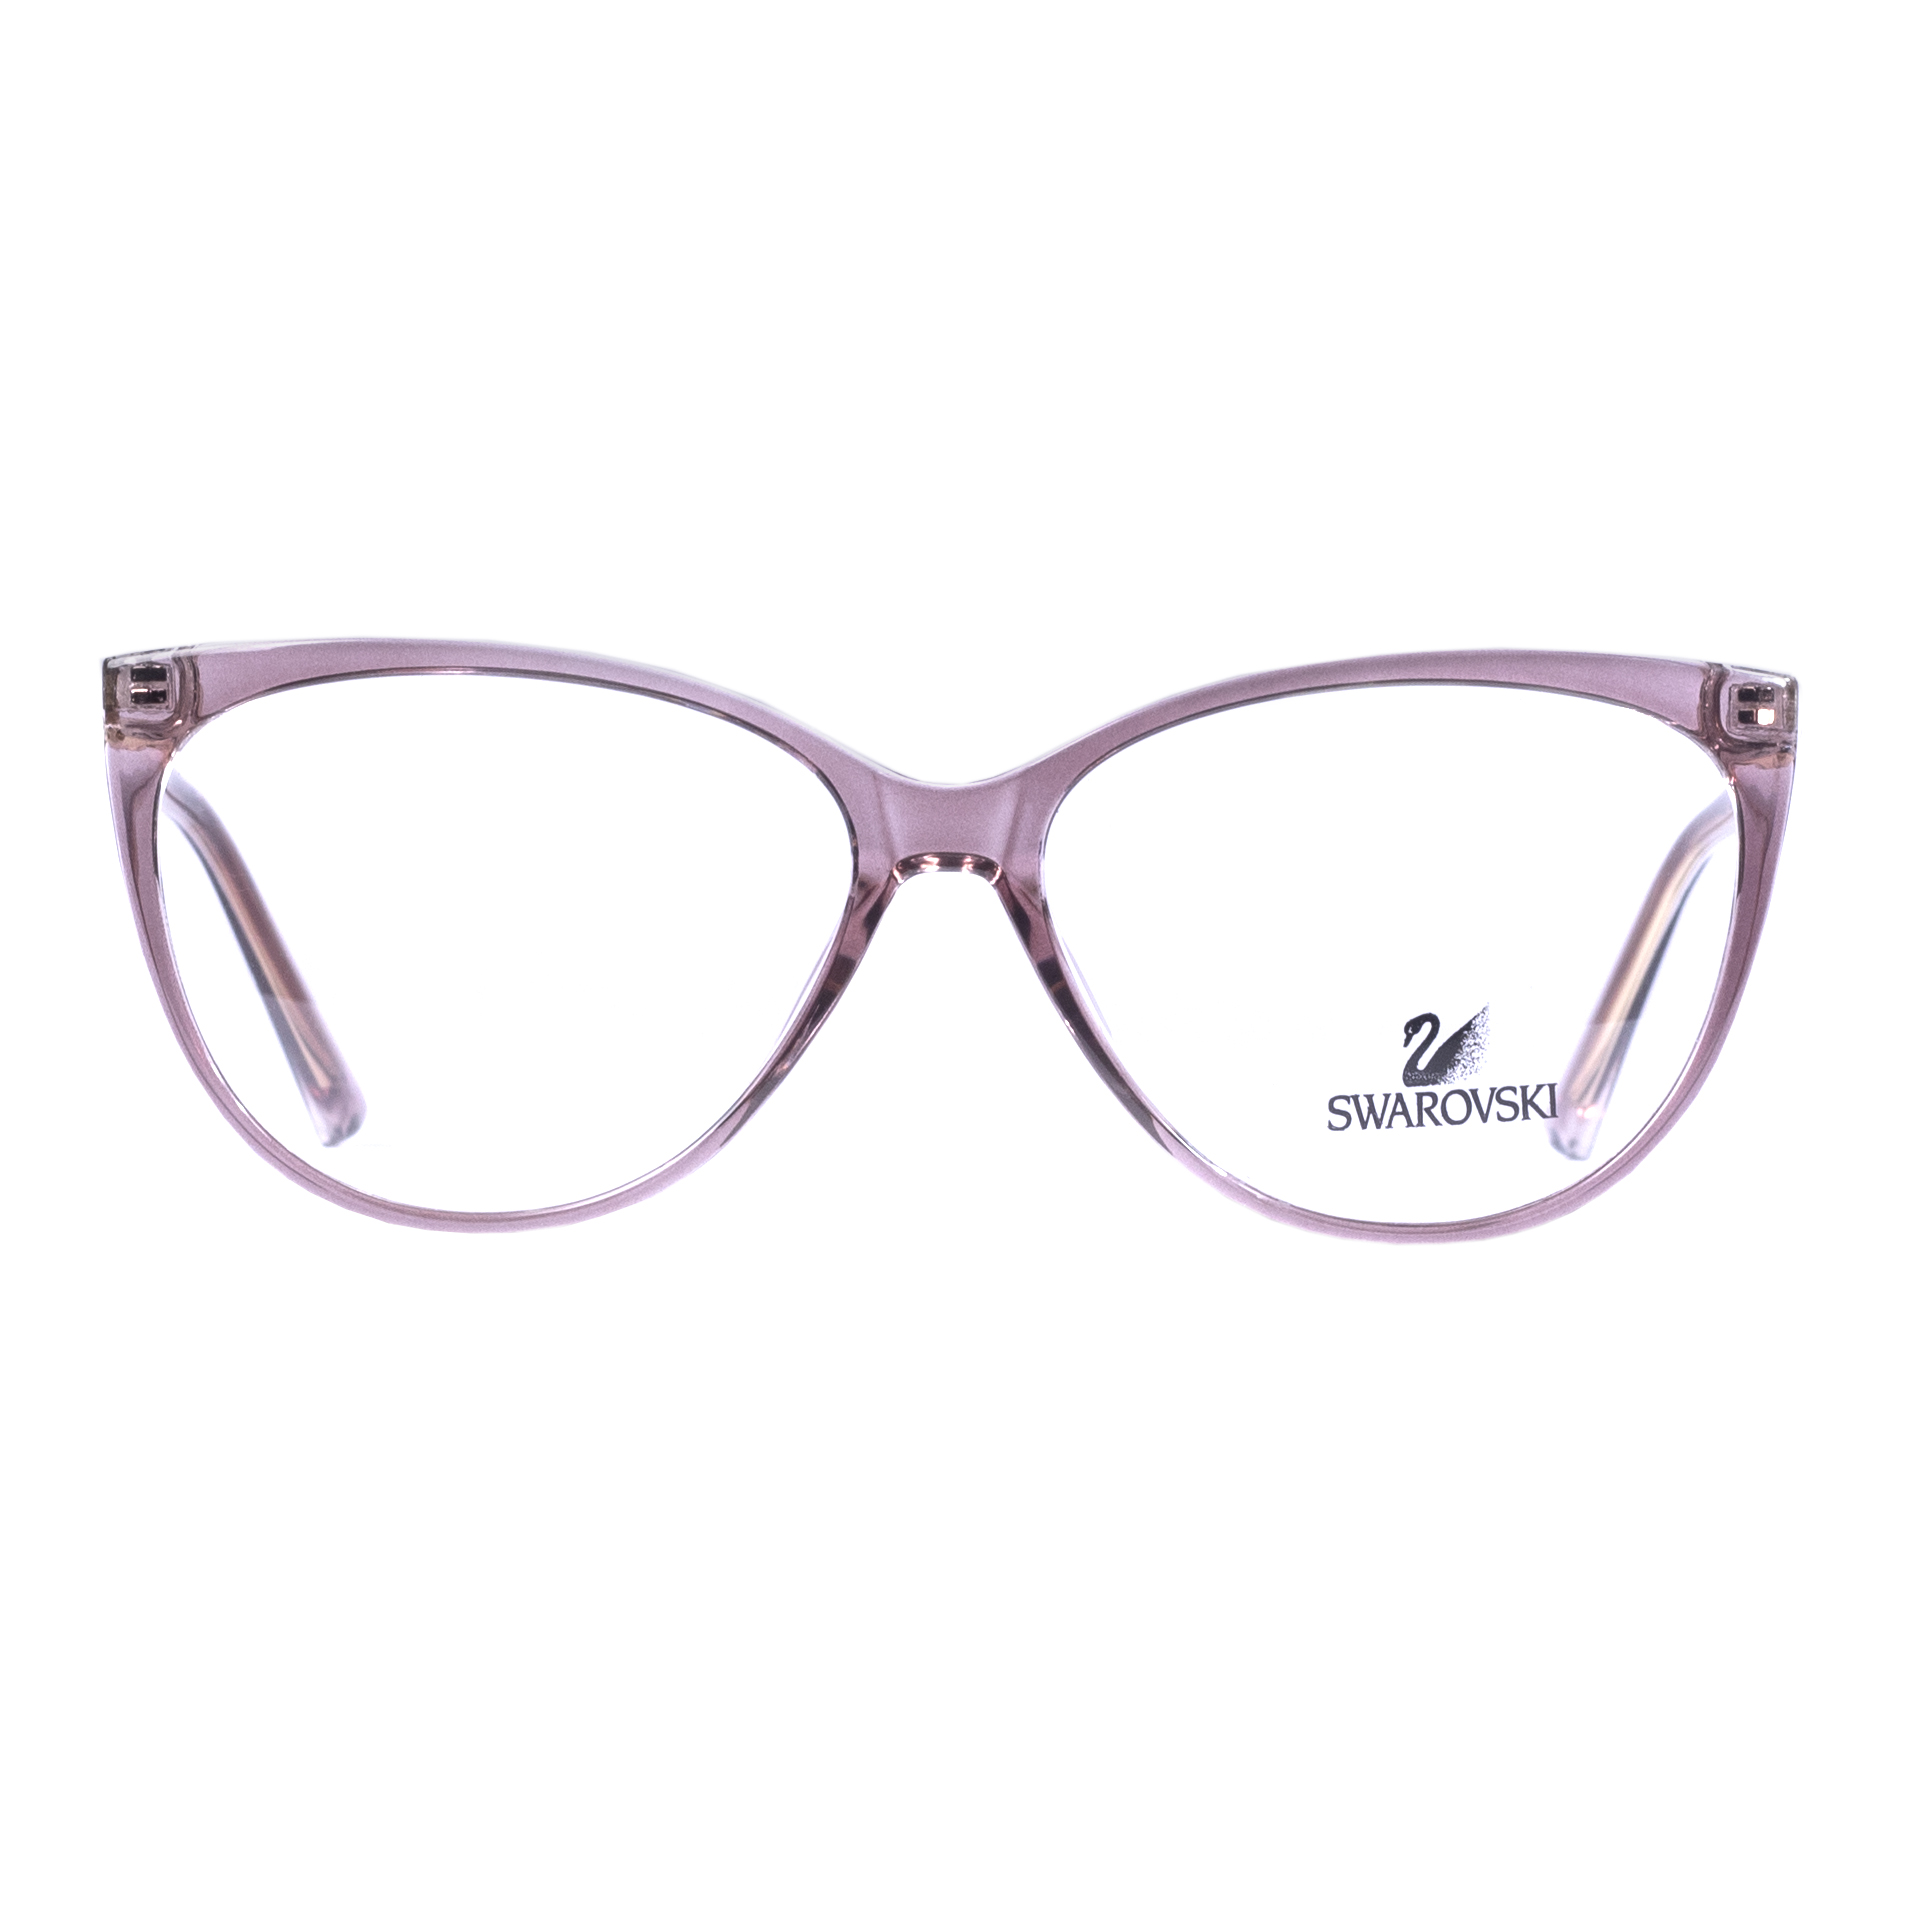 فریم عینک طبی زنانه سواروسکی مدل SW2021 -  - 1